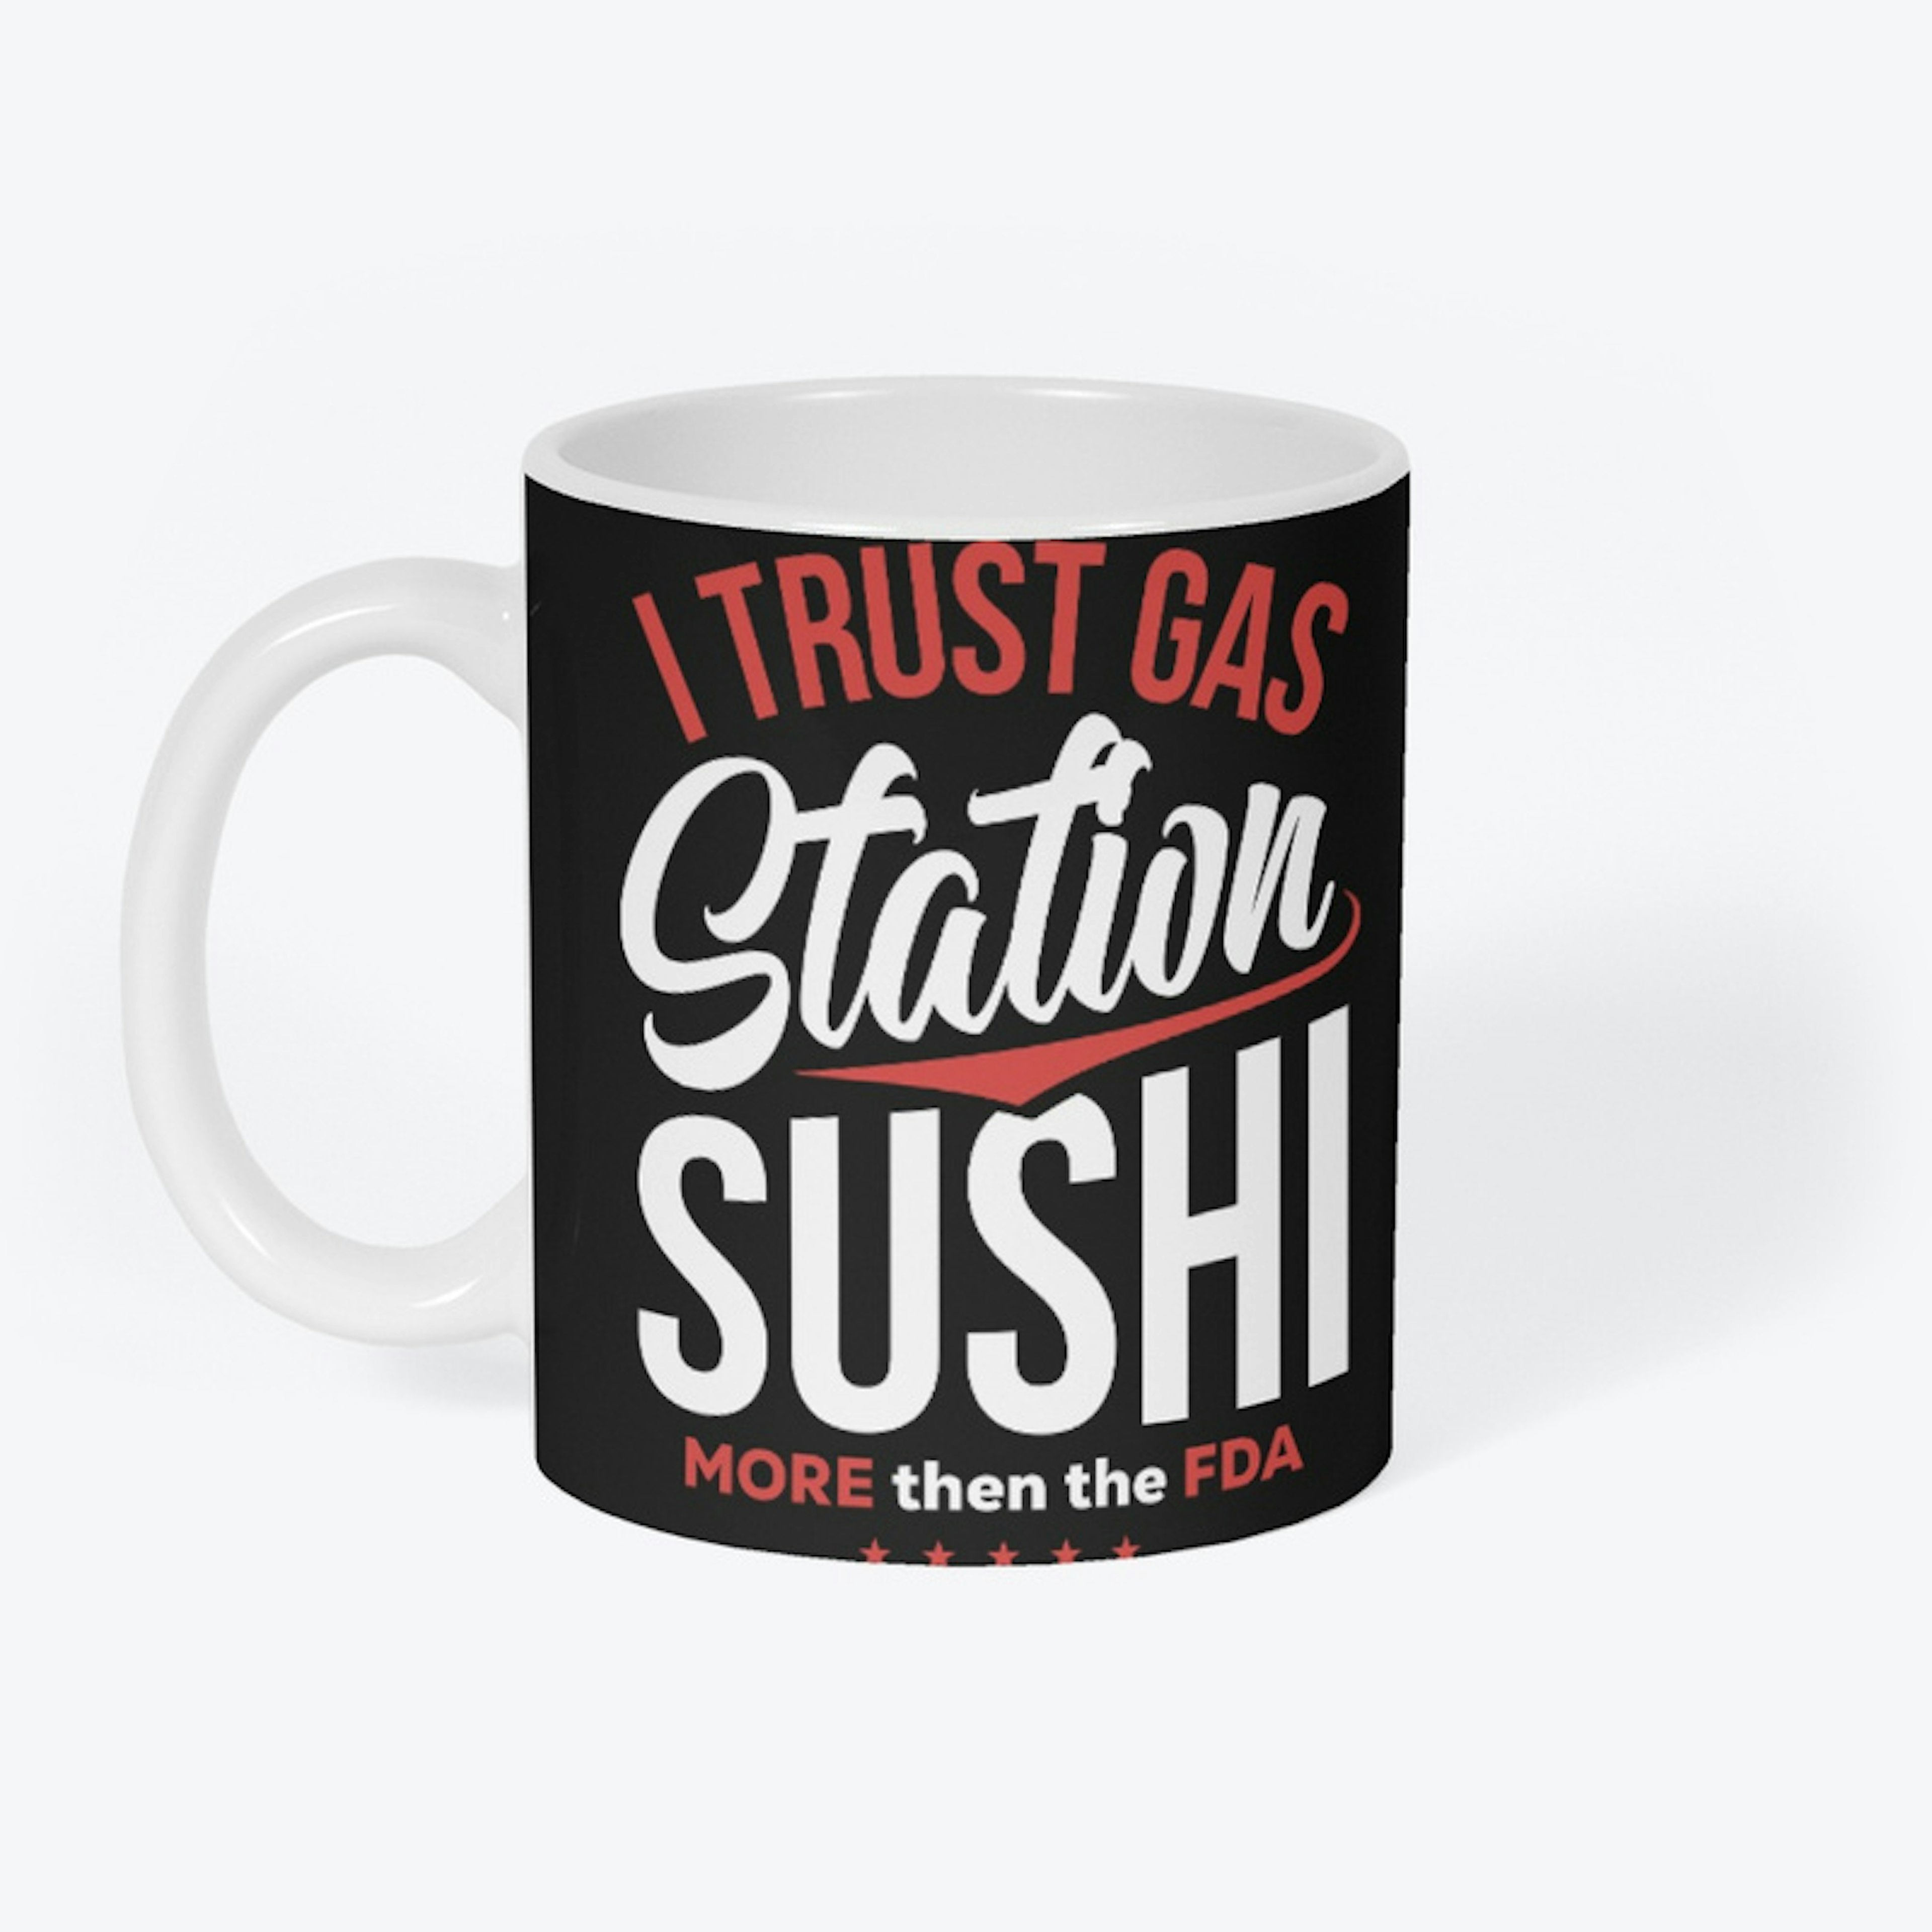 Gas Station Sushi